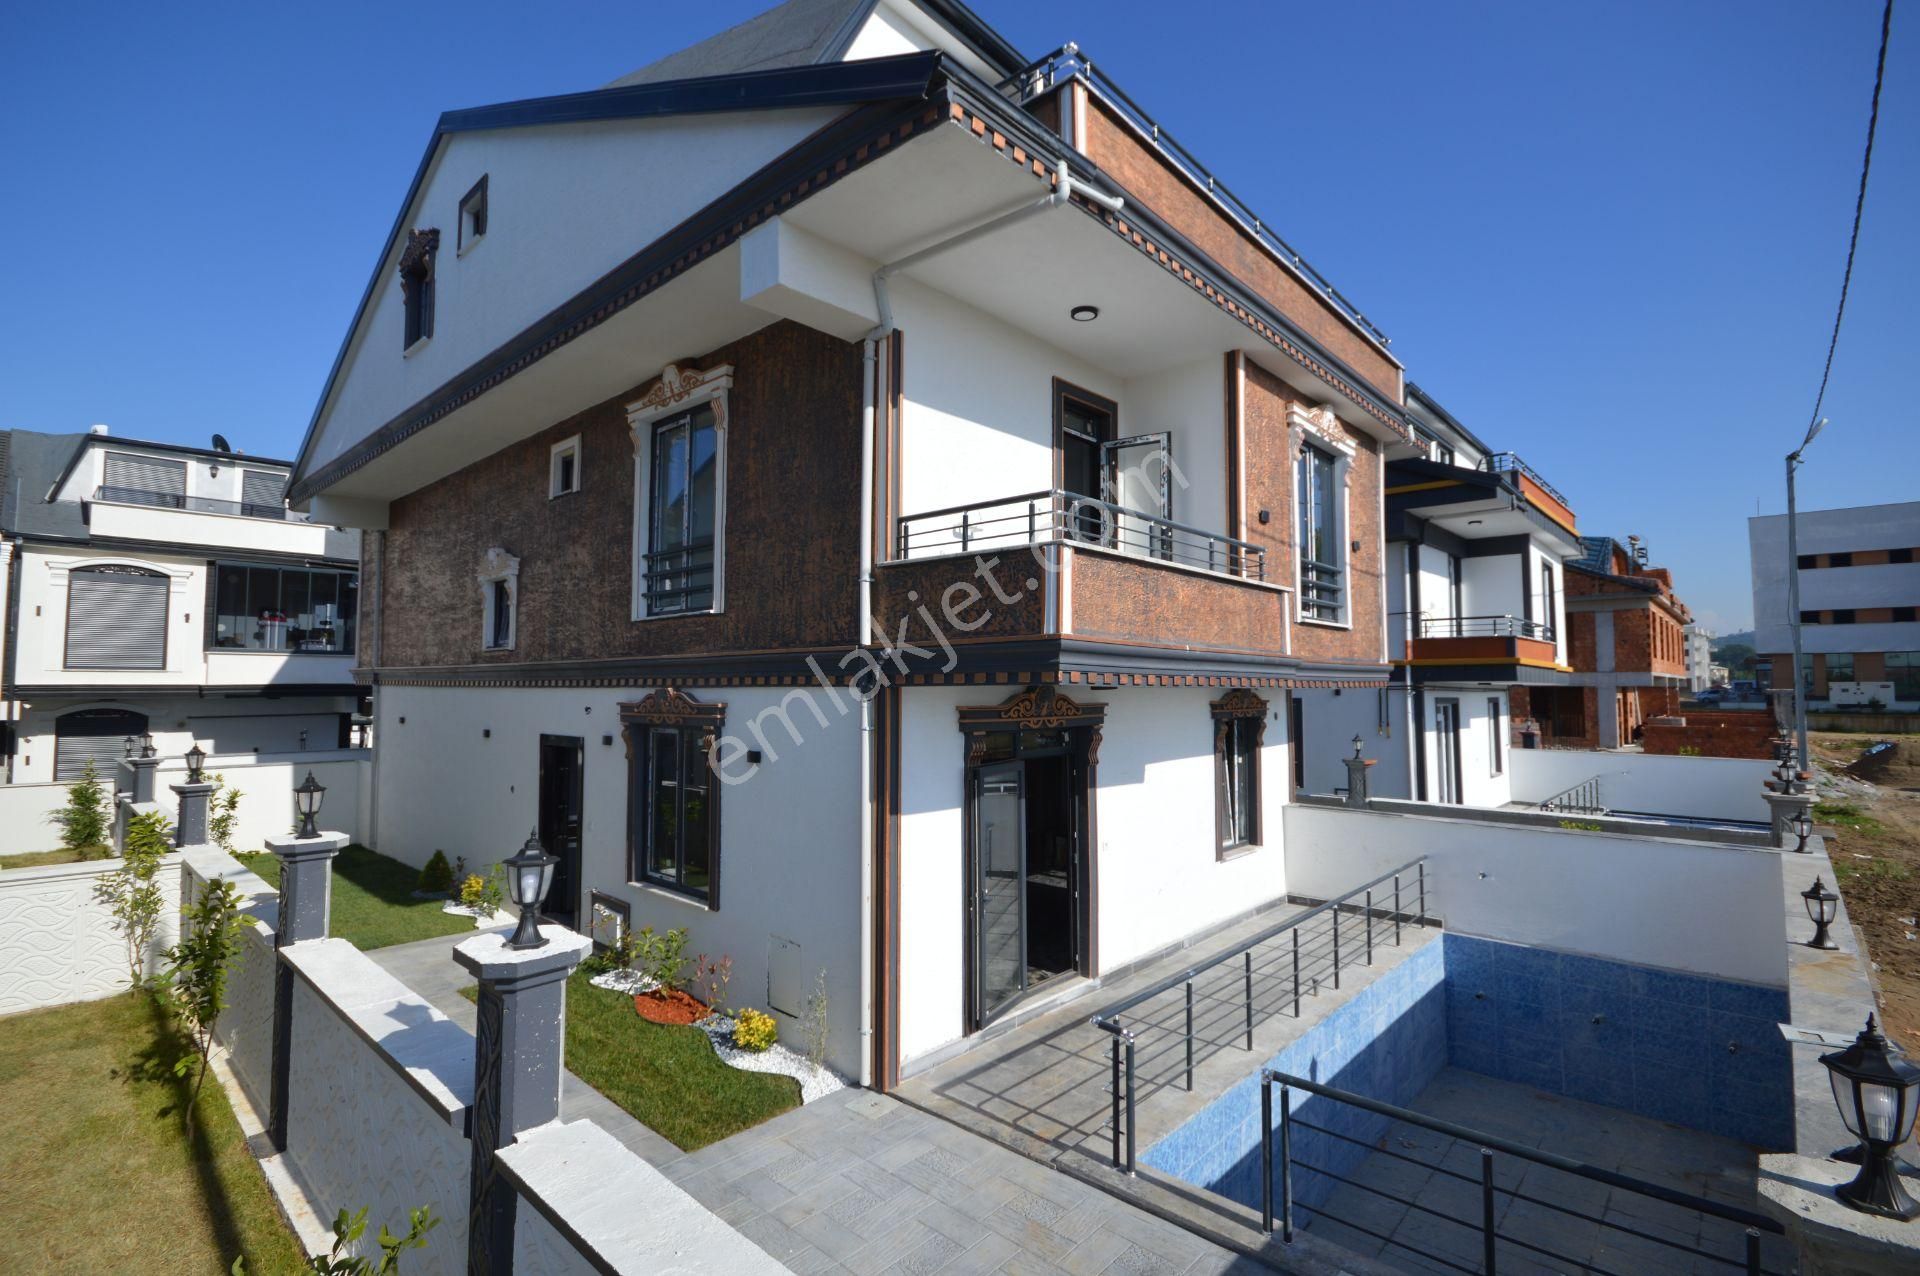 Kocaali Yalı Satılık Villa  SAKARYA KOCAALİ DE MÜSTAKİL BAHÇELİ 4+1 SIFIR VİLLA